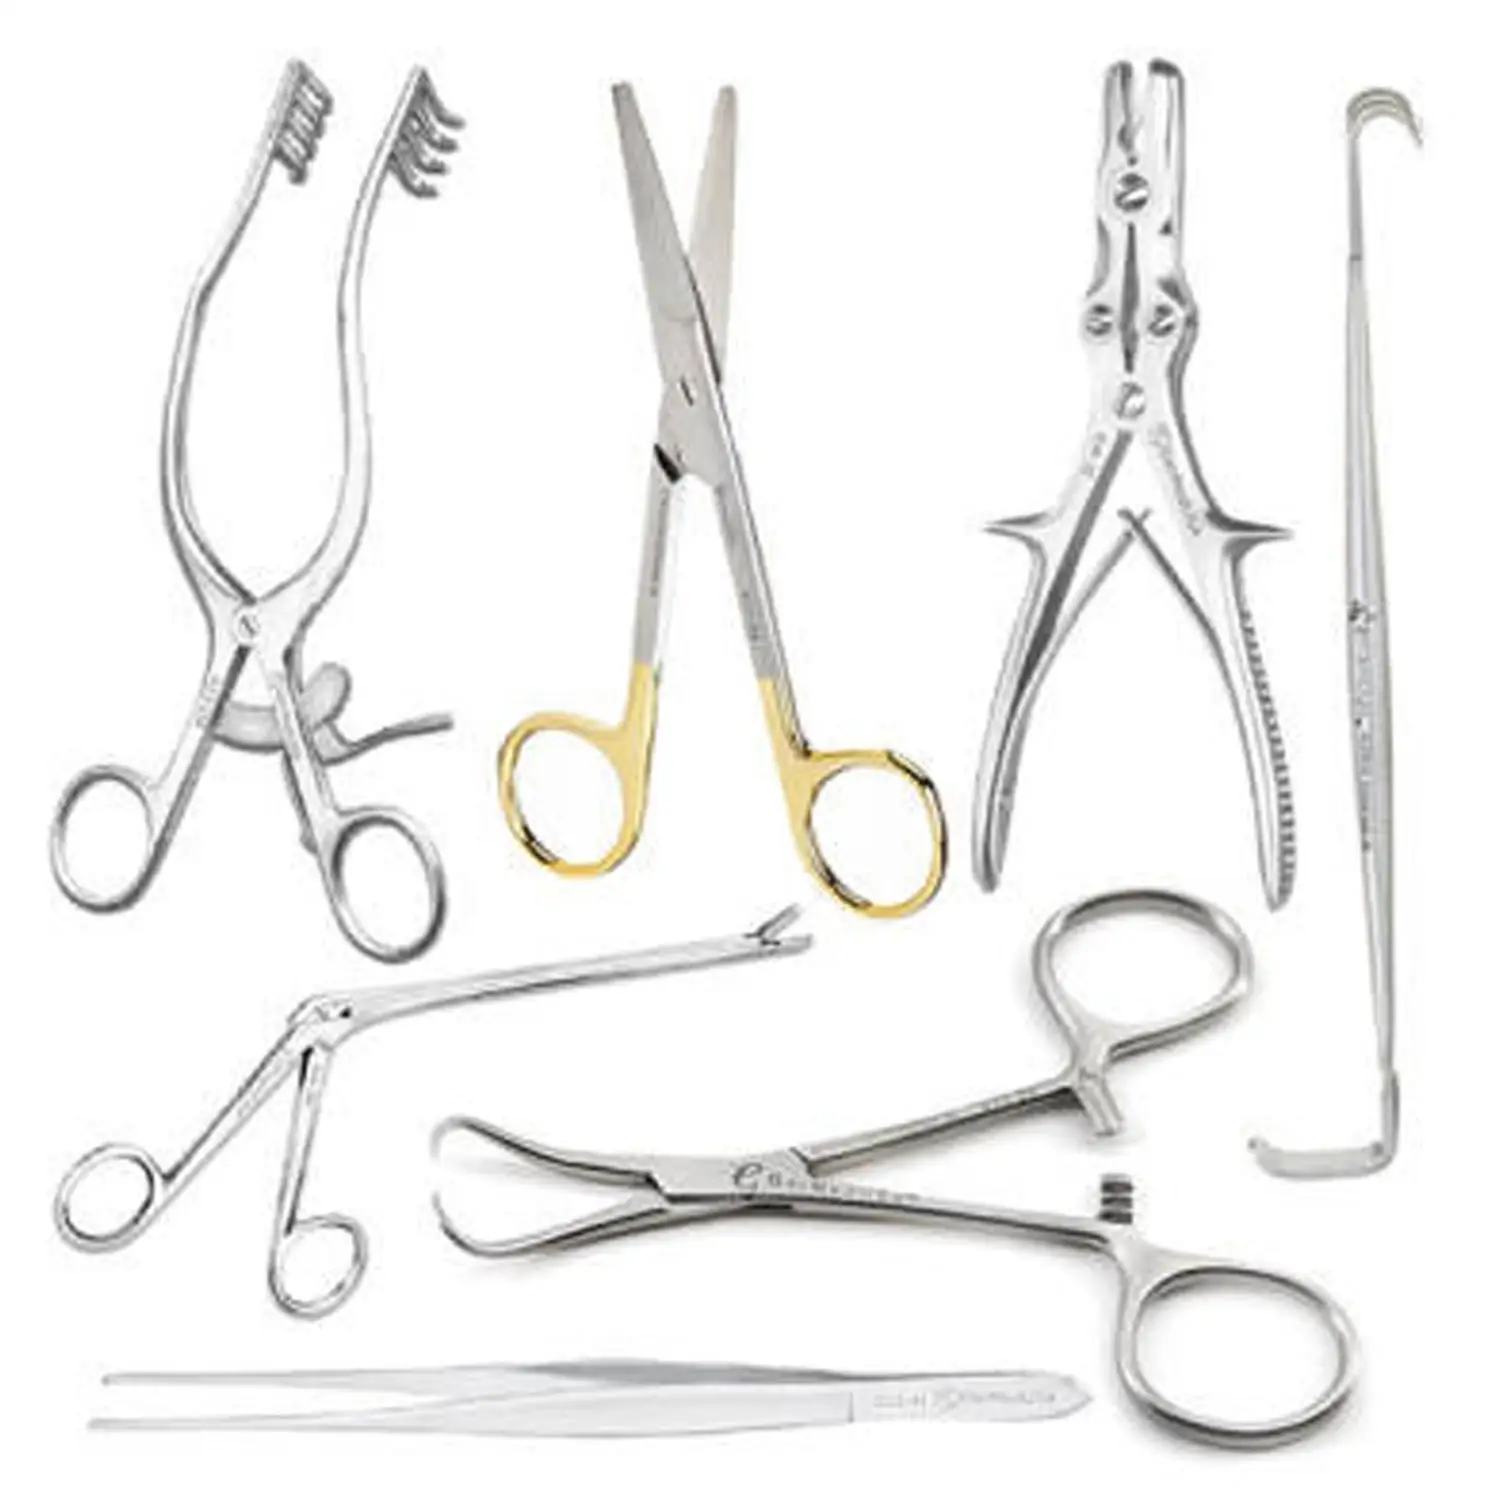 Base de laminectomie chirurgicale et colonne vertébrale 26 pièces ensemble Instruments chirurgicaux produits de qualité spéciaux et approuvés